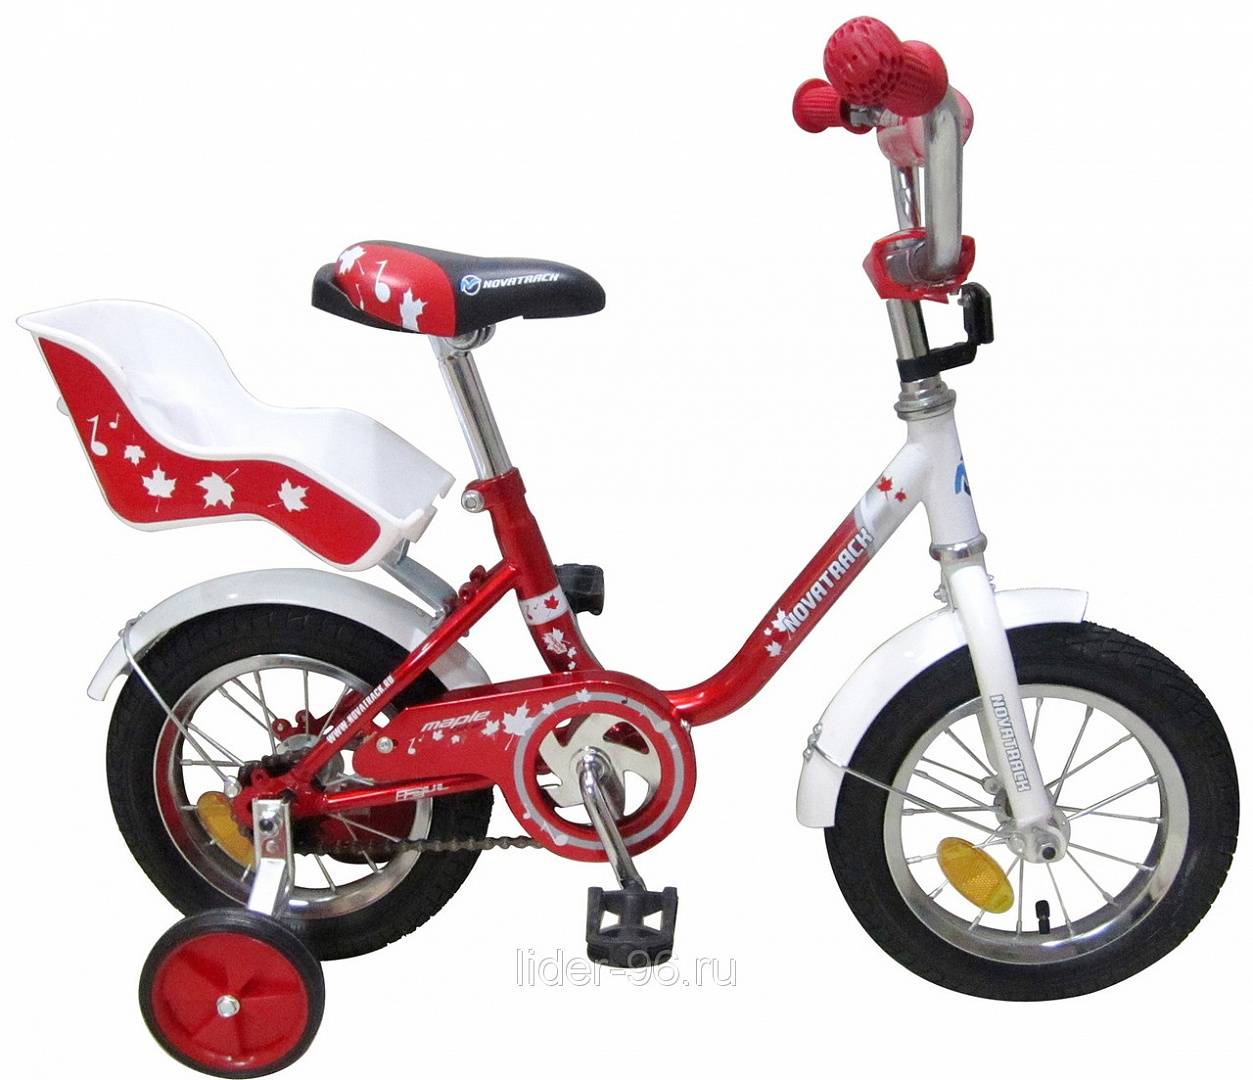 Велосипед Новатрек для девочки красный